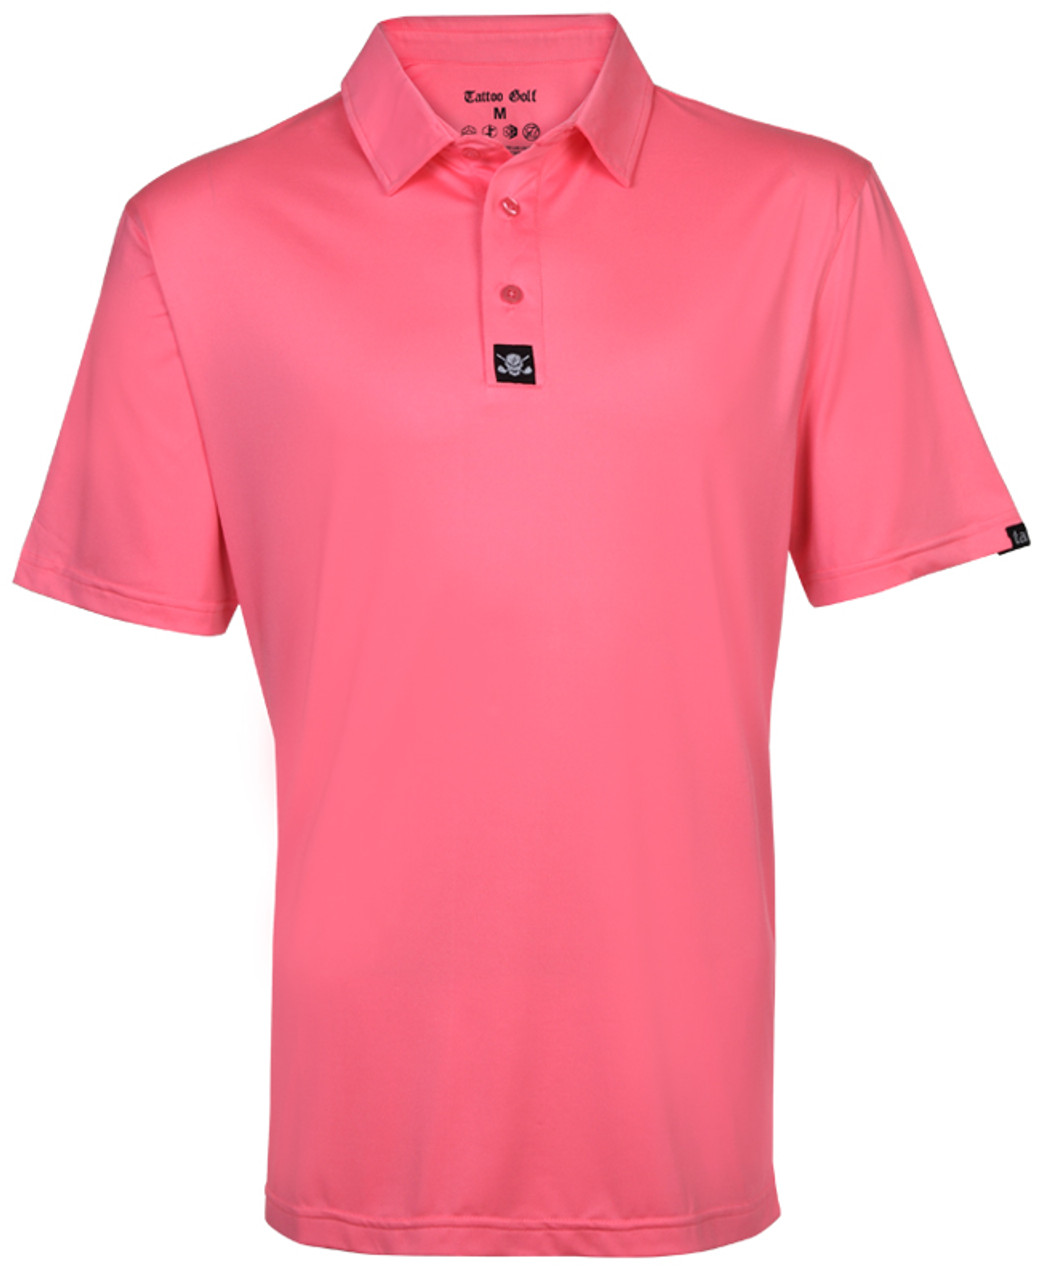 pink golf shirt mens